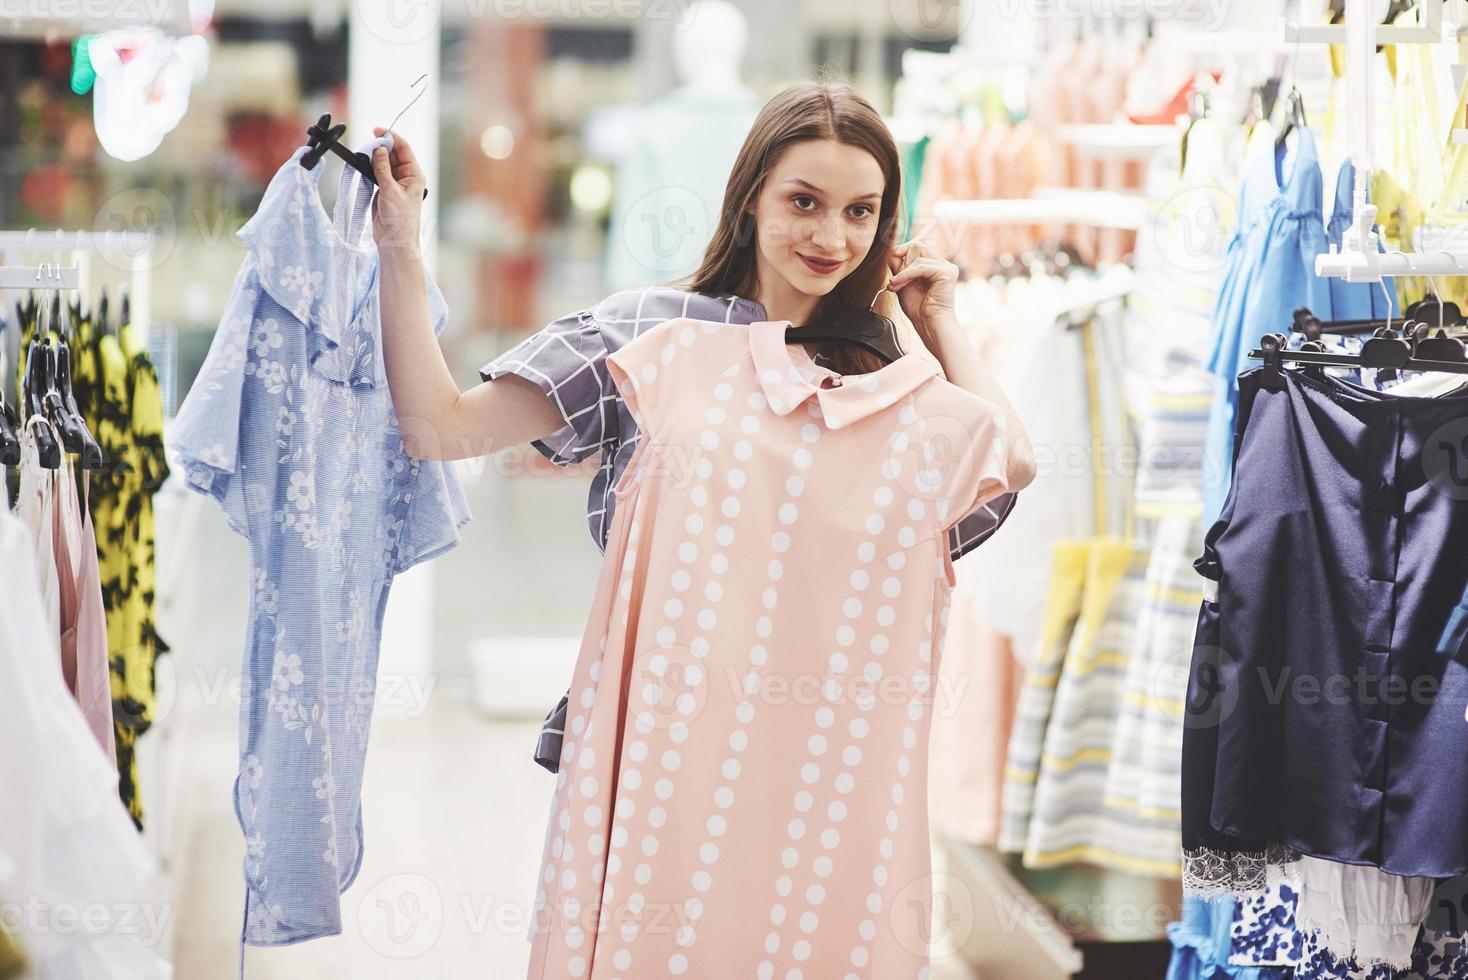 imagen de la señorita de pie en la tienda de ropa en el interior eligiendo vestidos. mirando a un lado foto